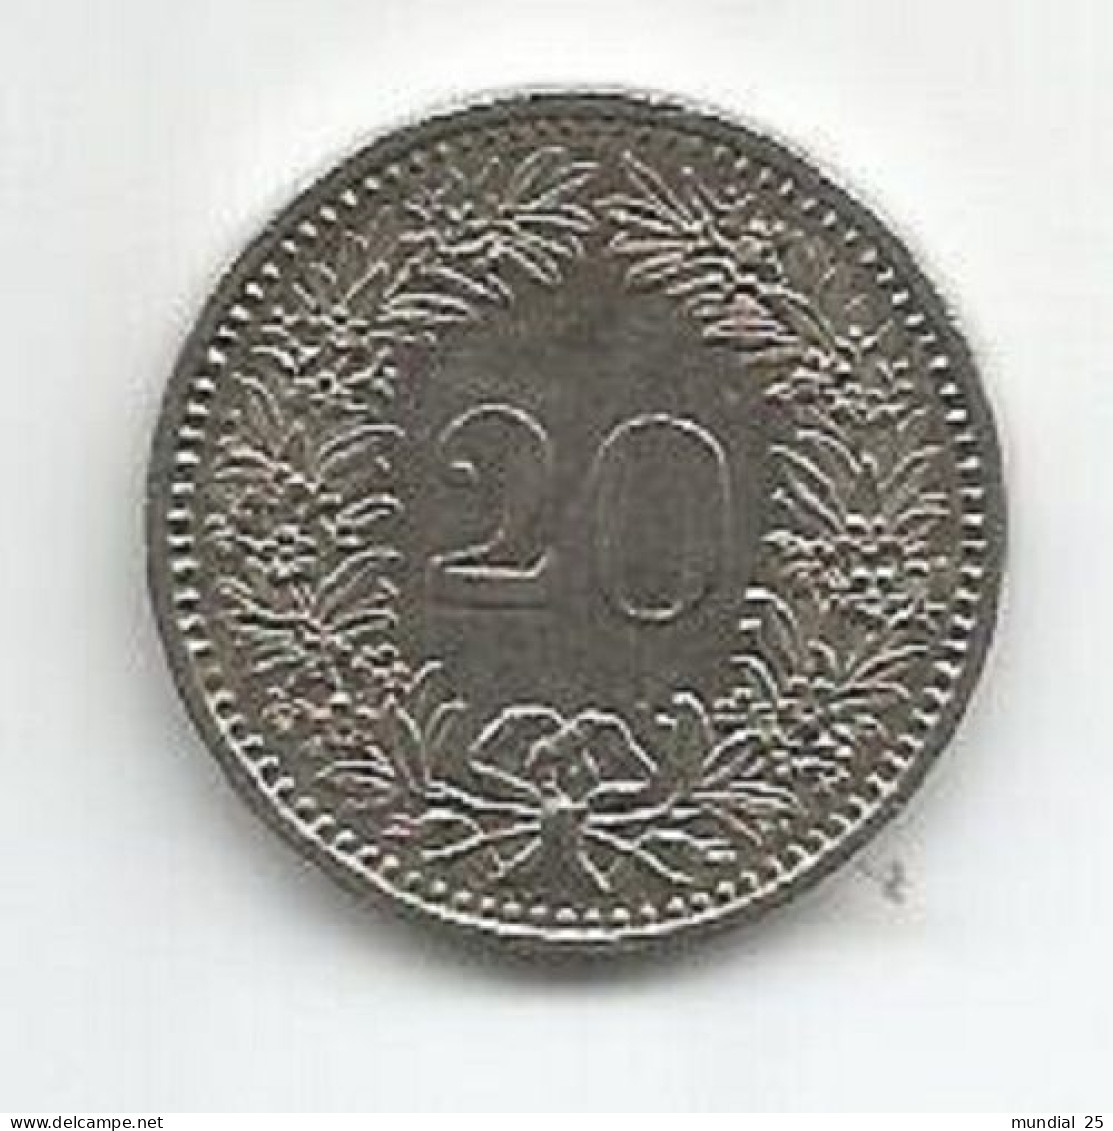 SWITZERLAND 20 RAPPEN 1984 - 20 Centimes / Rappen